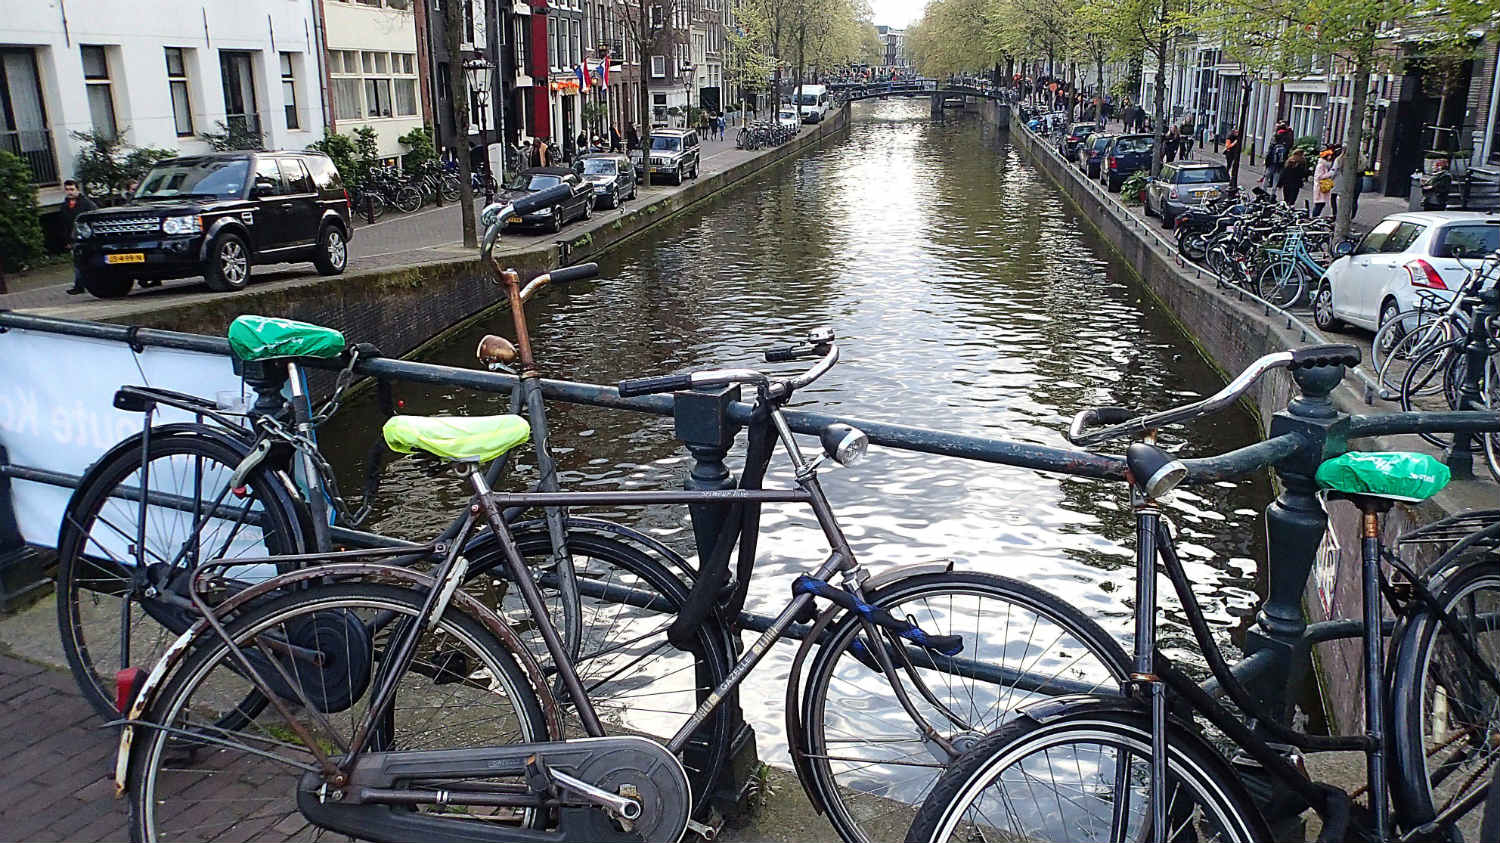 Amsterdam (1): Vetar je upravljao životom 1